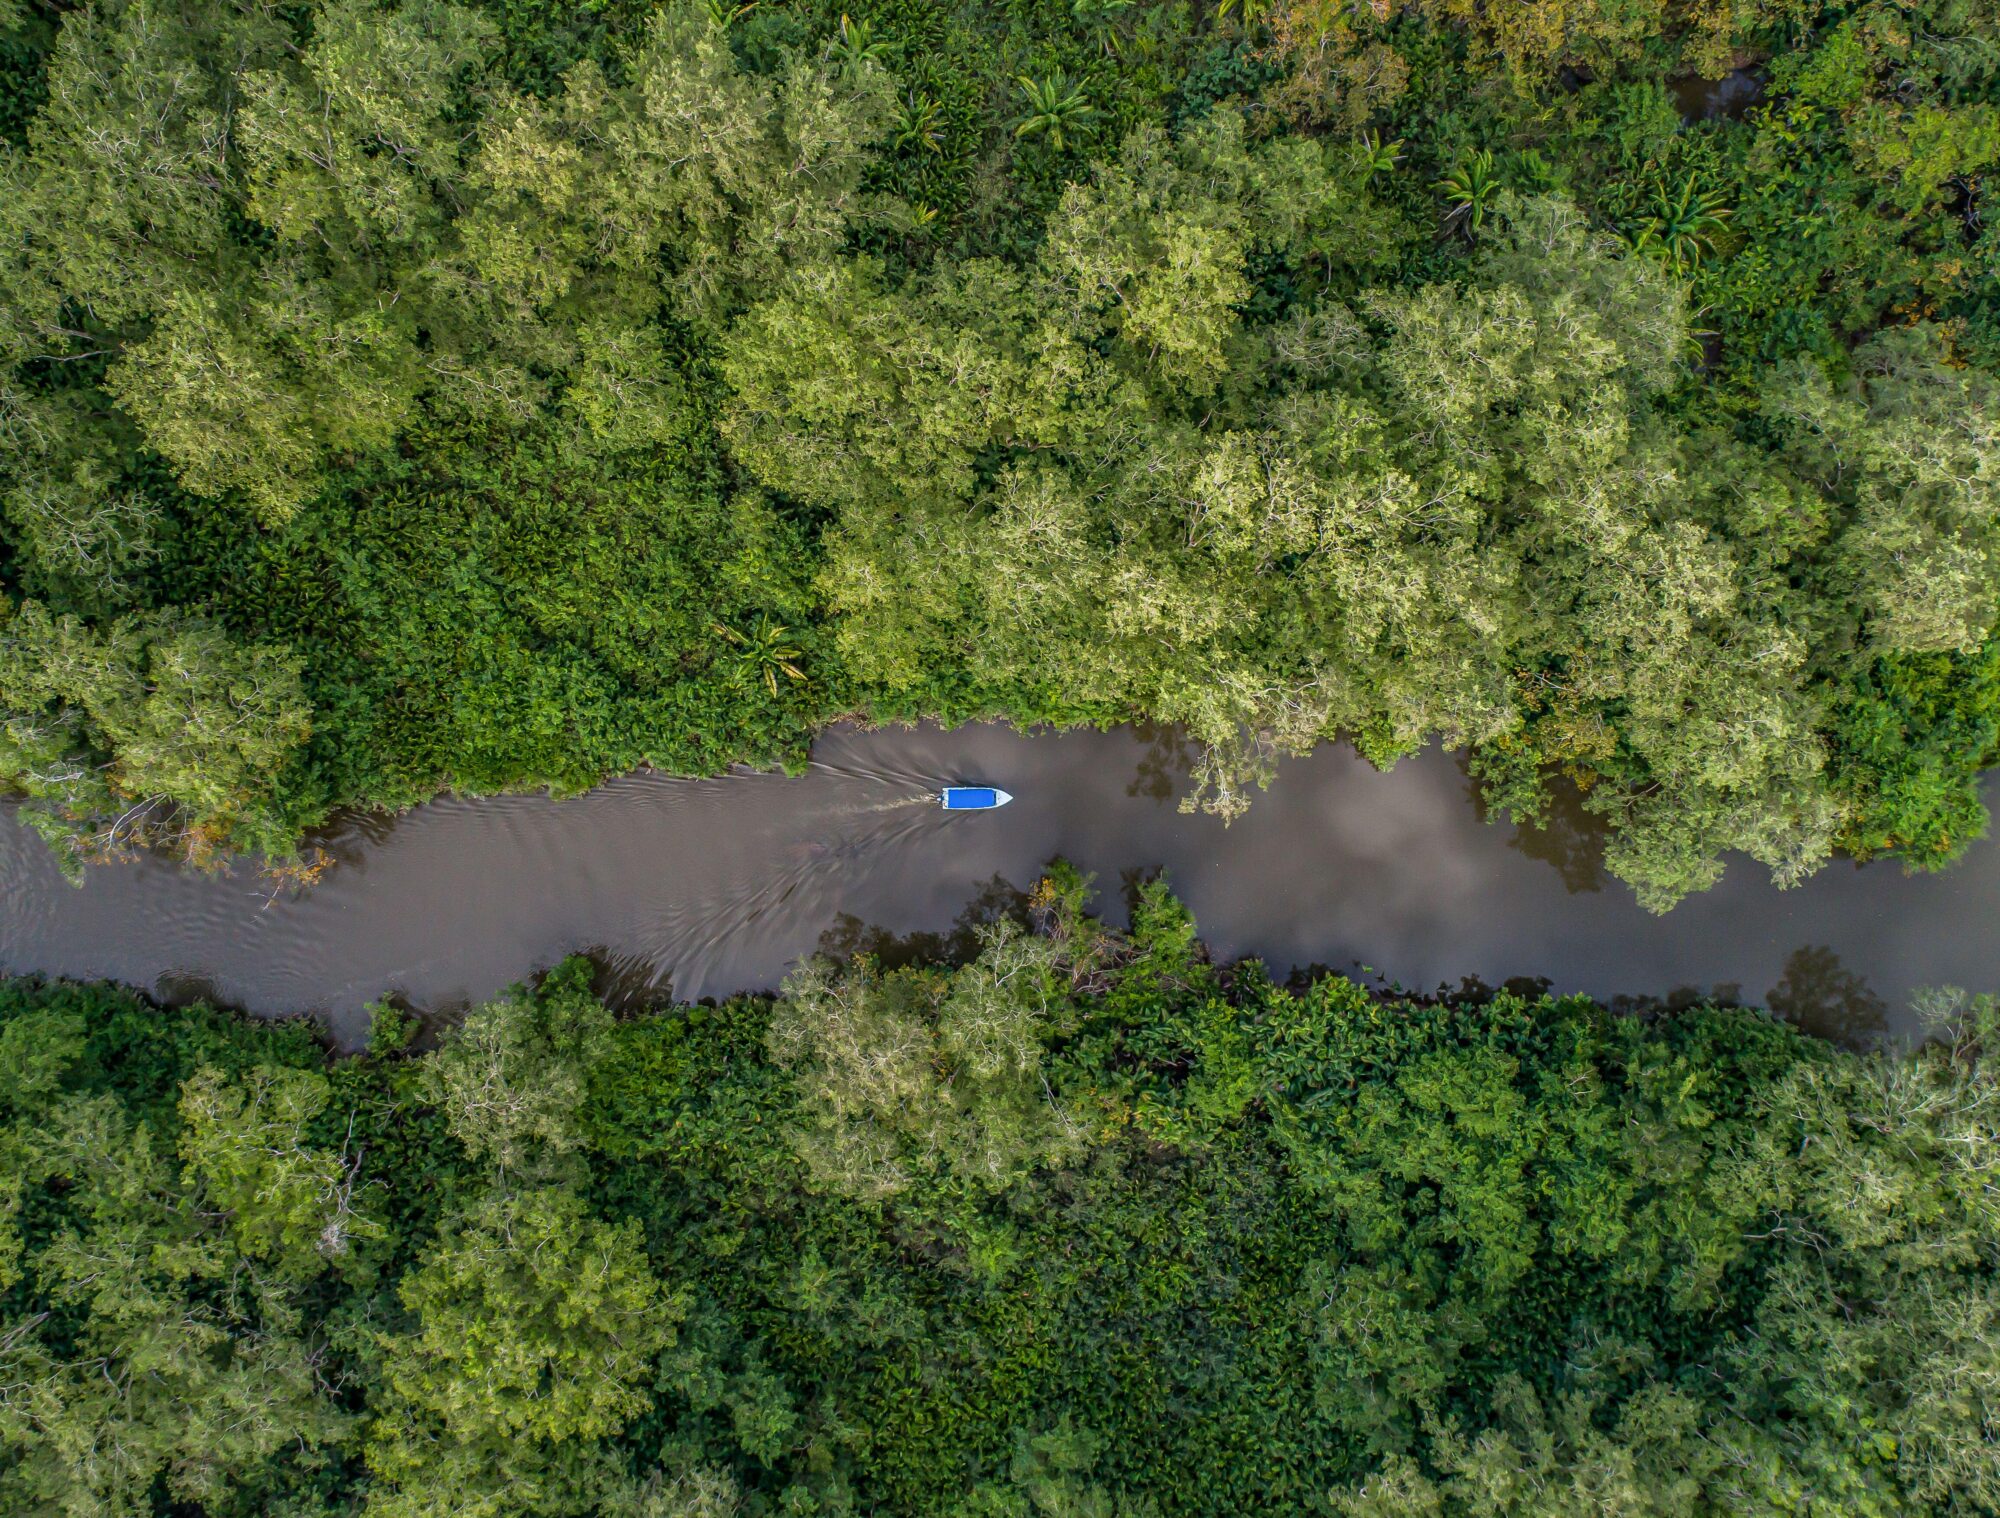 vista aérea de um barco em um rio cercado por vegetação